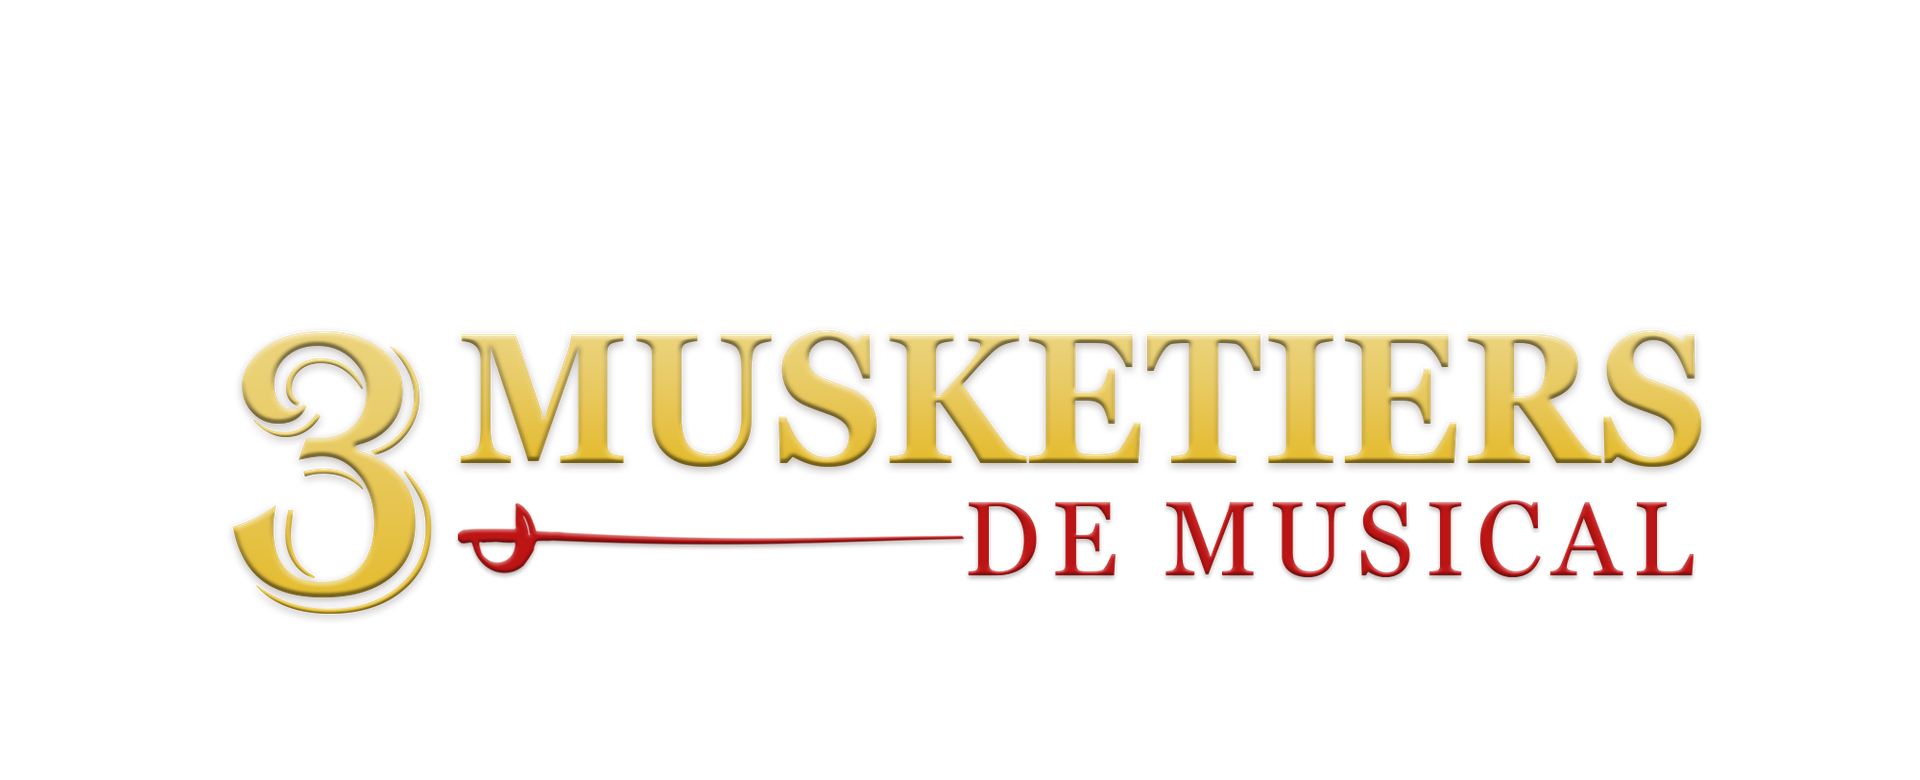 3 Musketiers, de musical